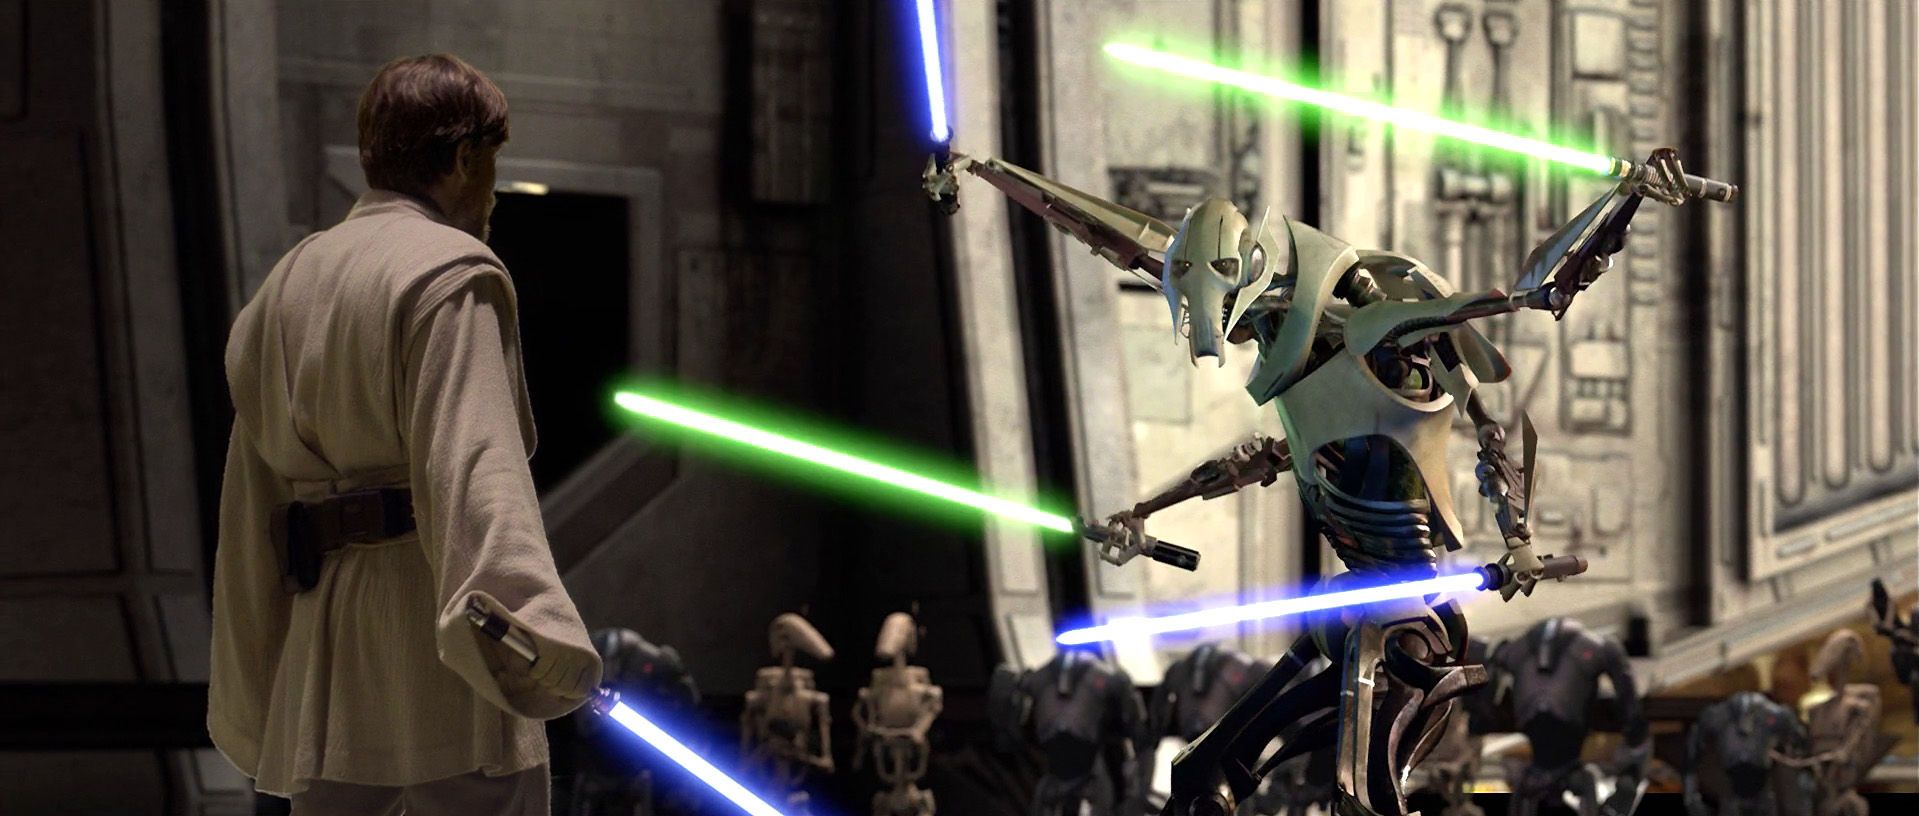 Star Wars 3: Revenge of the Sith - Obi-Wan Kenobi vs General Grievous